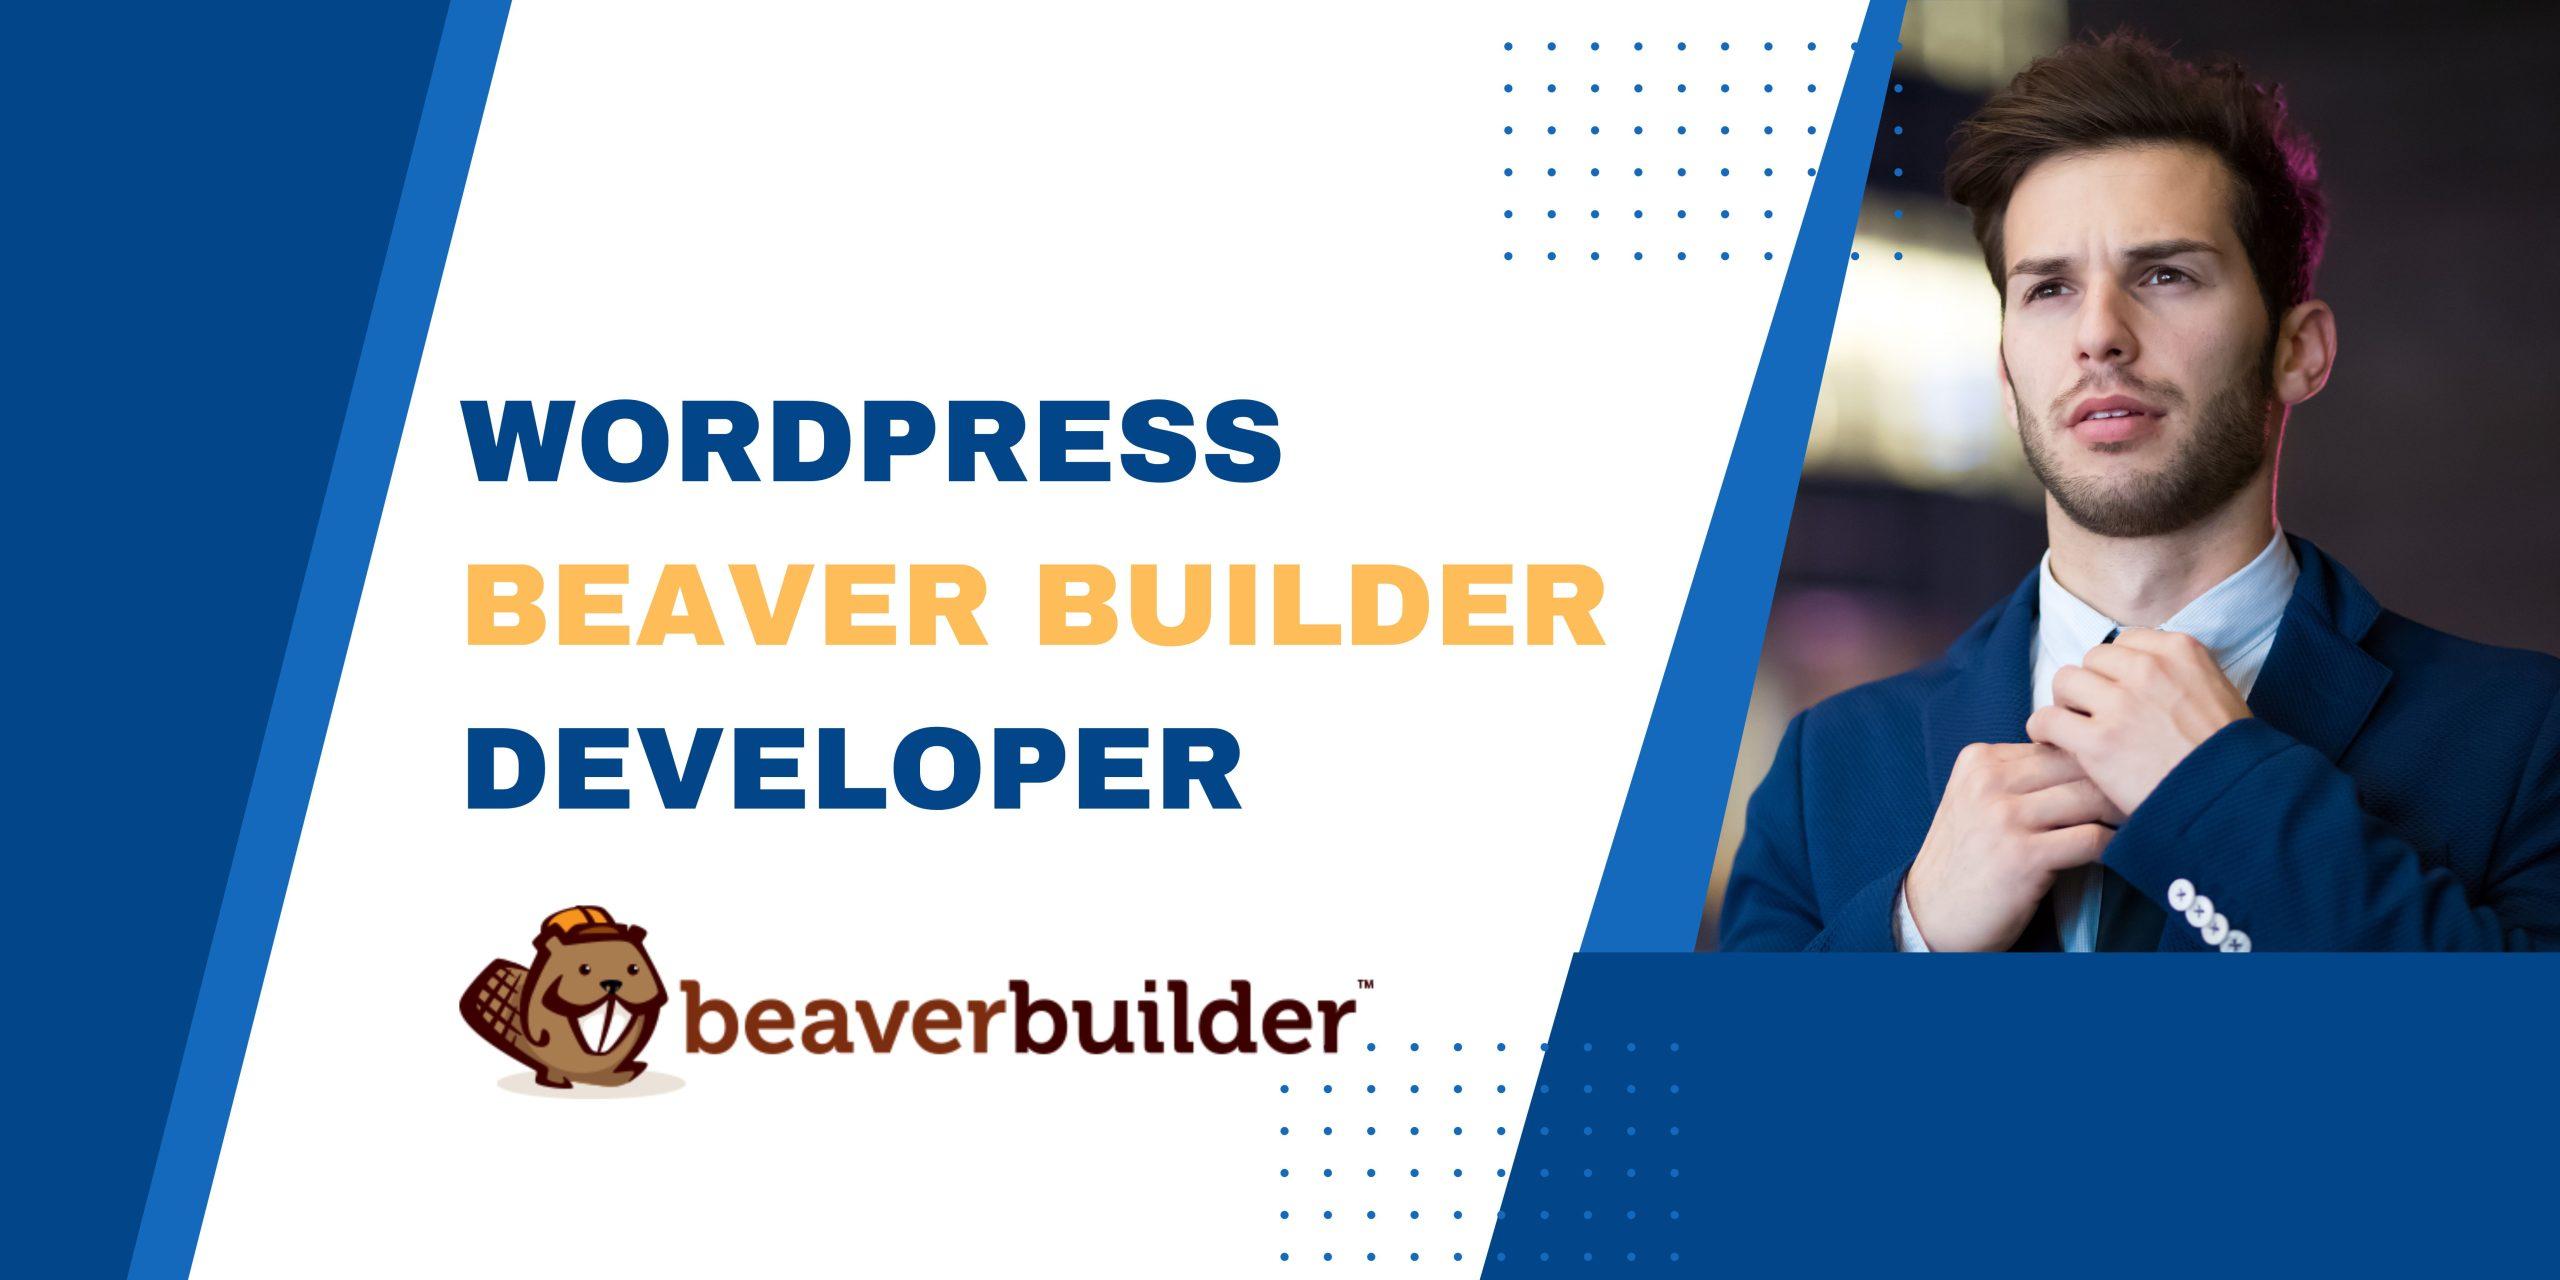 WordPress beaver builder developer